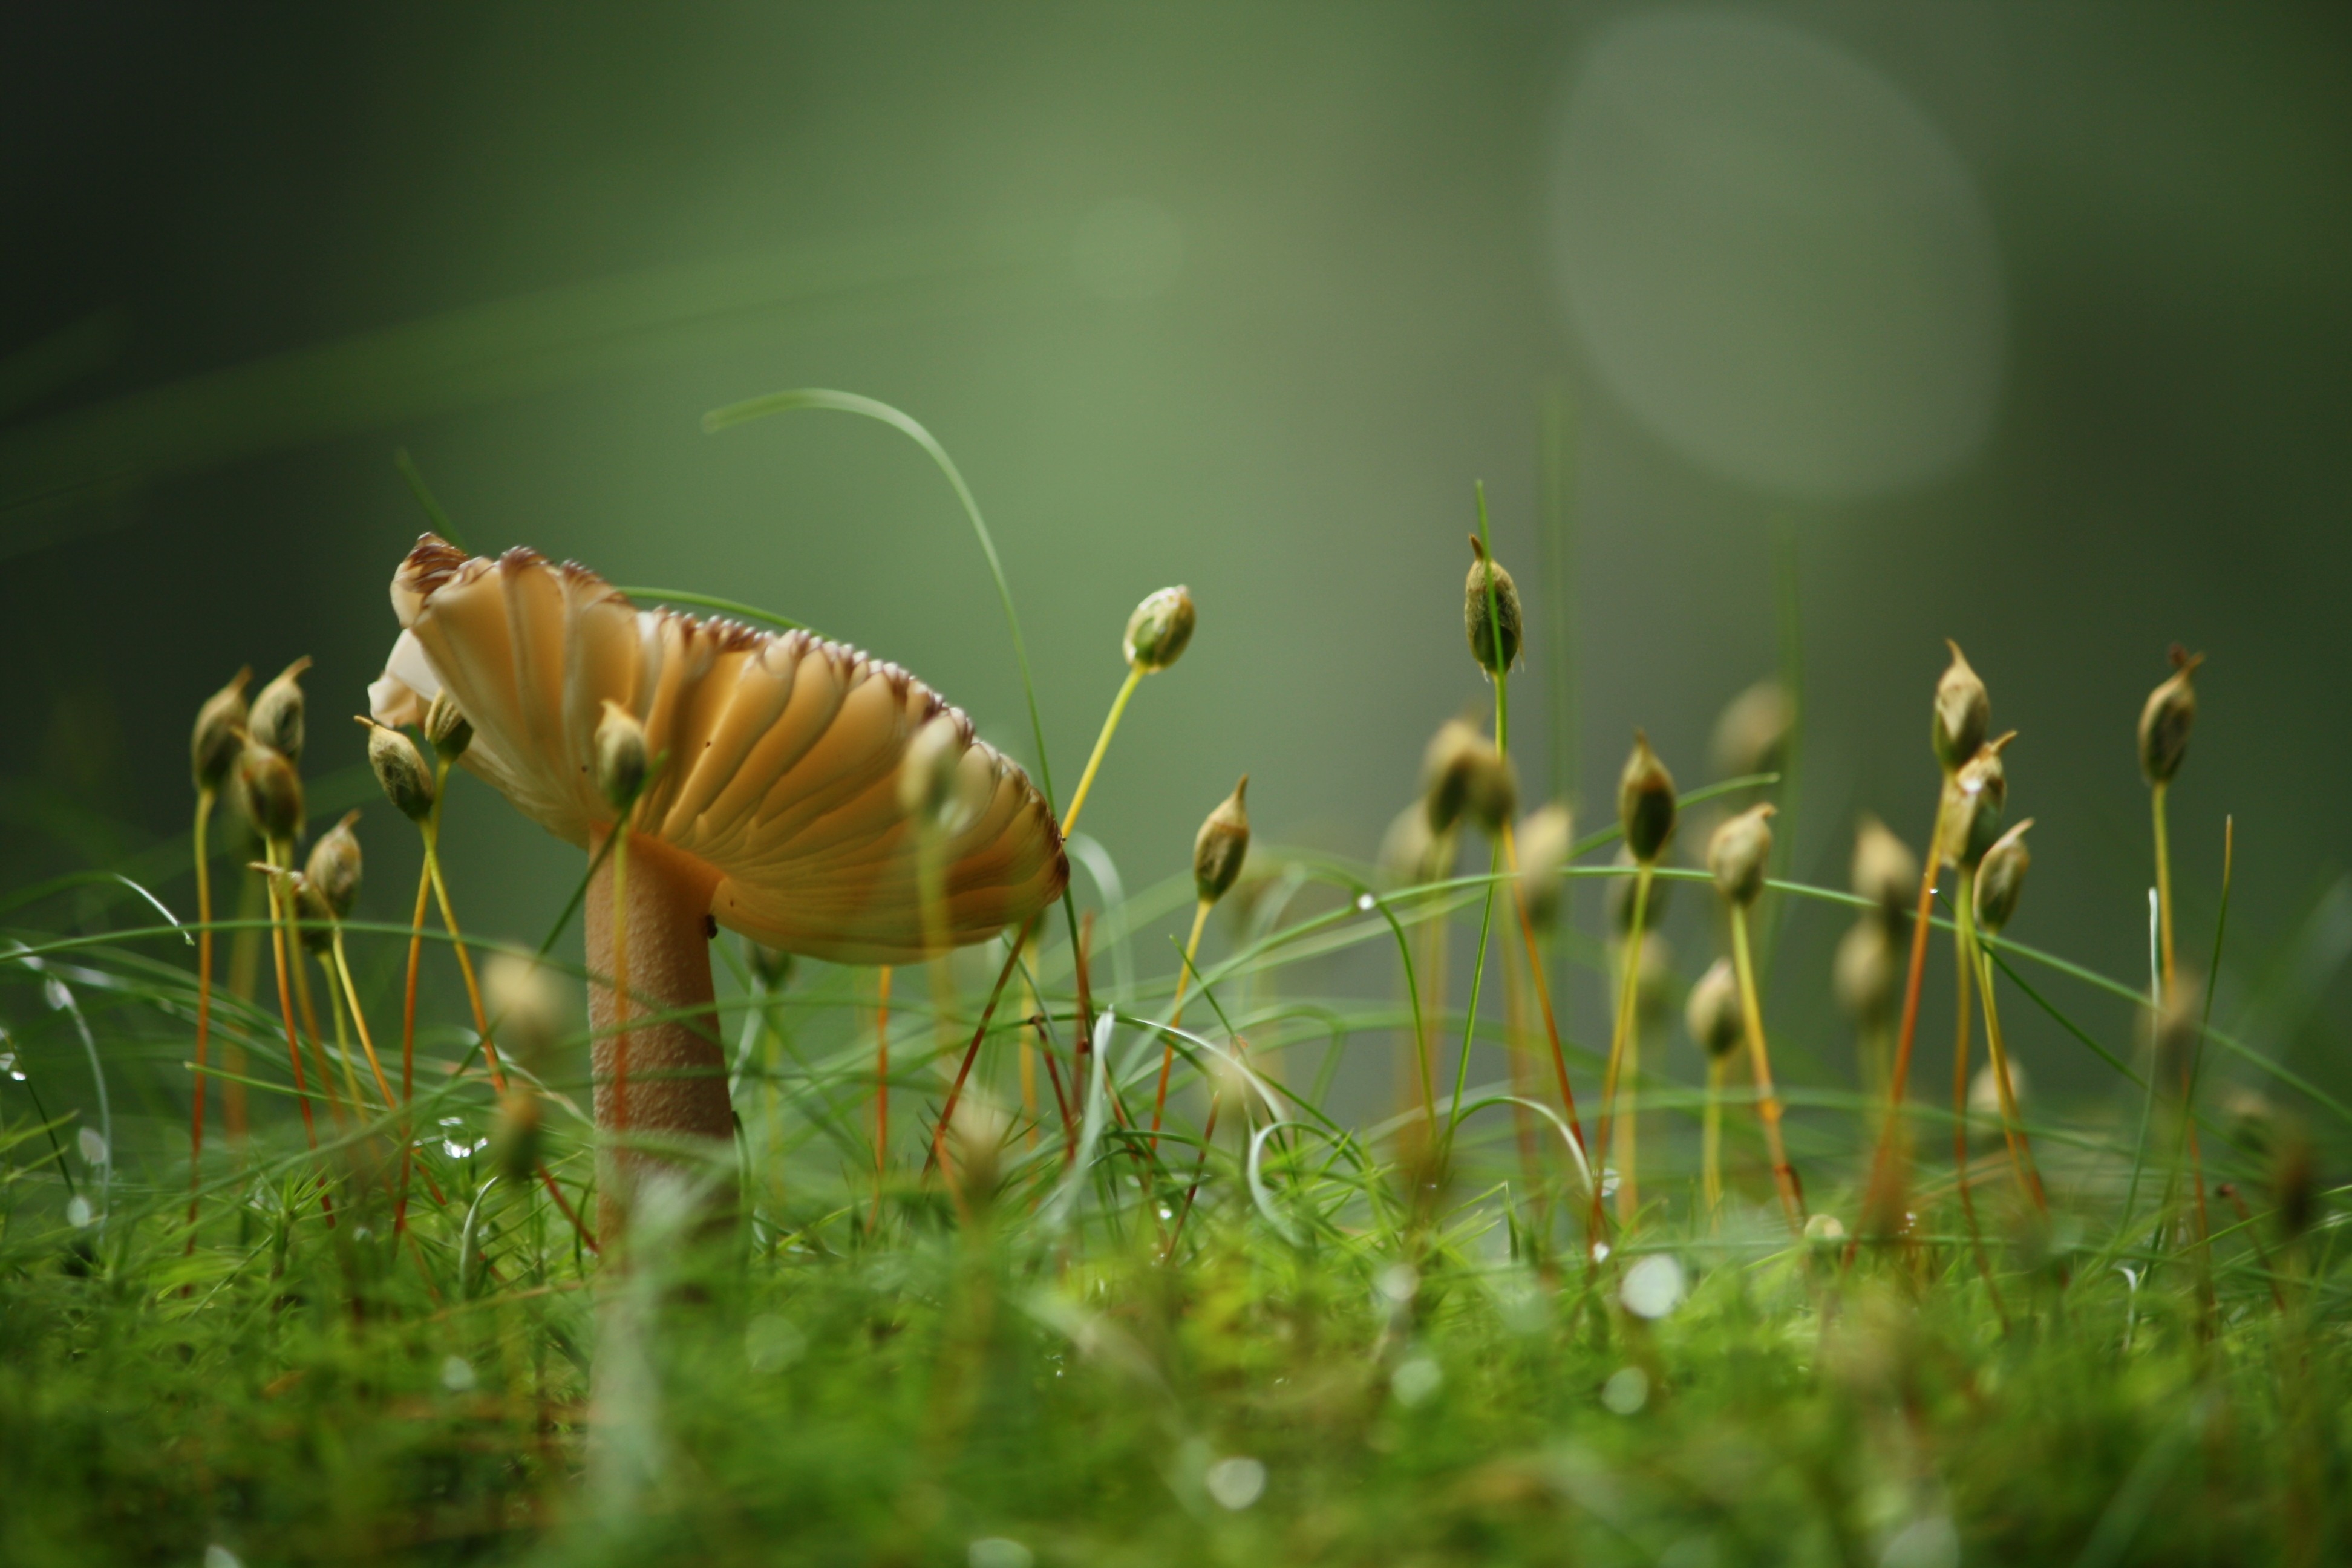 蘑菇生长在低矮的绿草地上